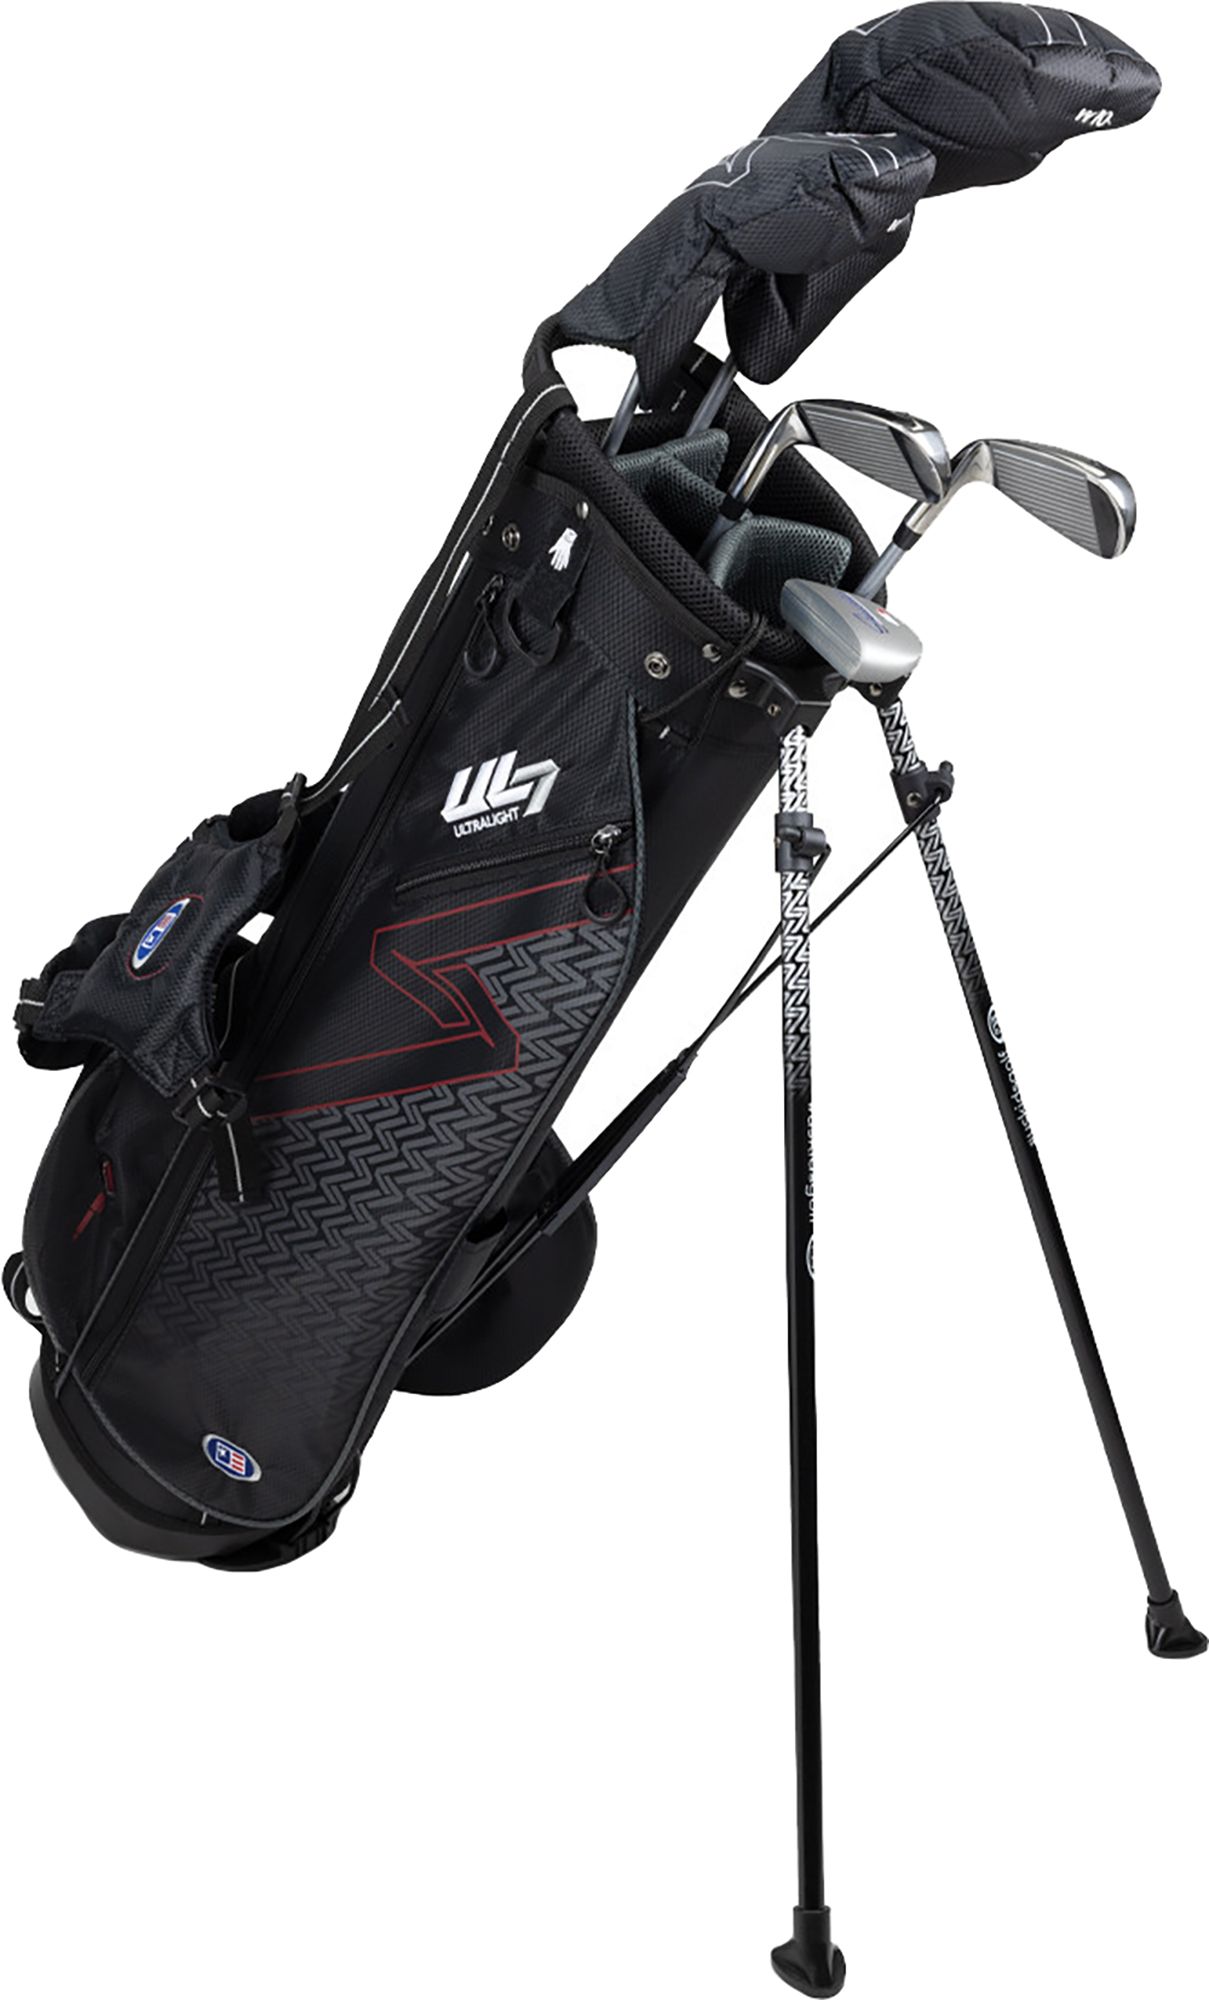 U.S. Kids Golf UL7 -Club Carry Set (- in